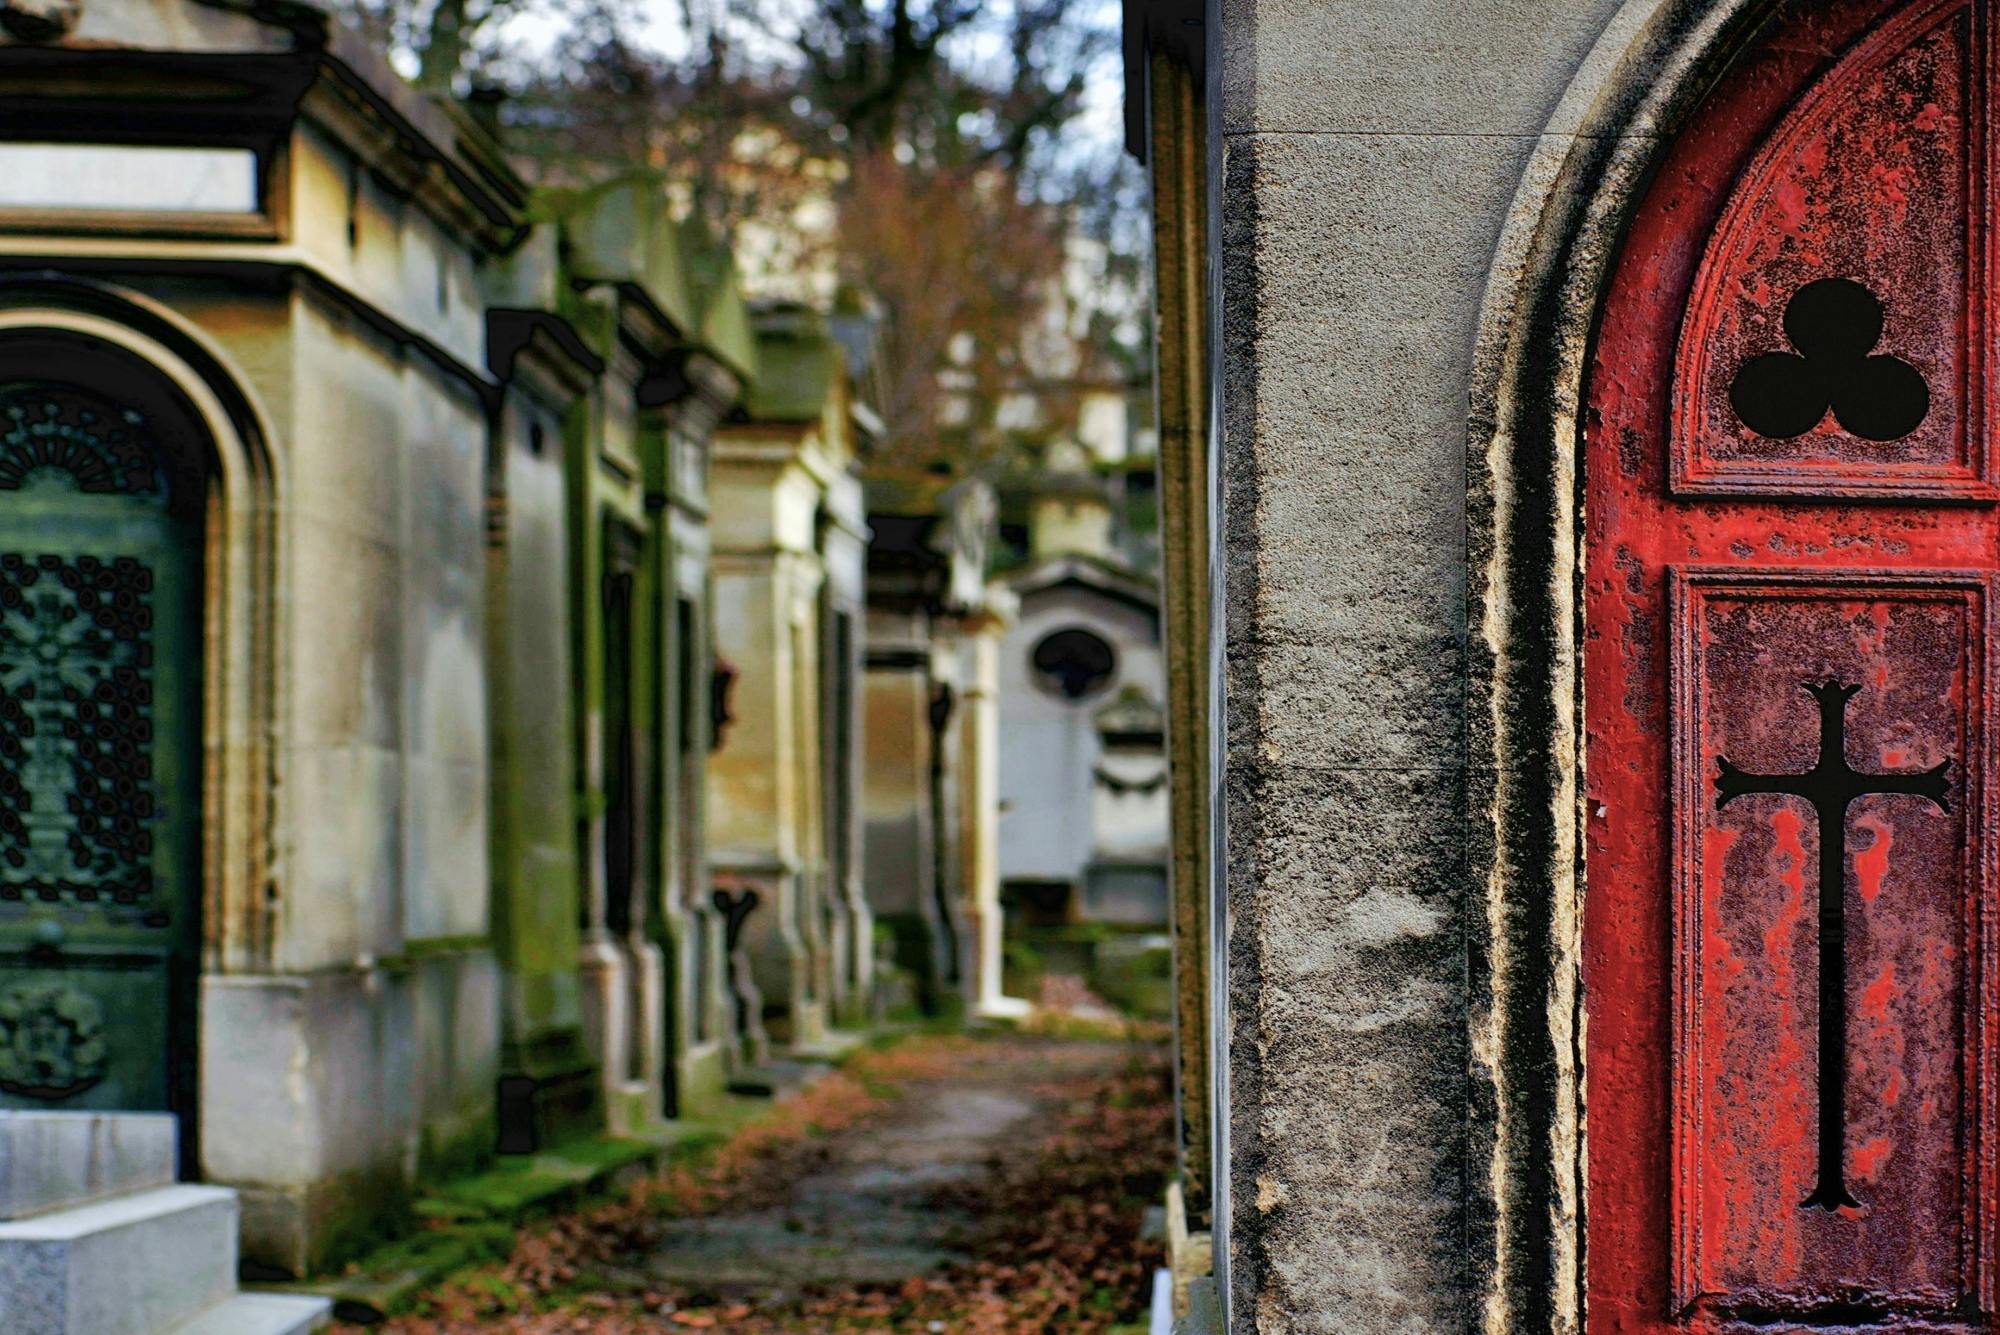 Rondleiding door beroemde graven in Père Lachaise